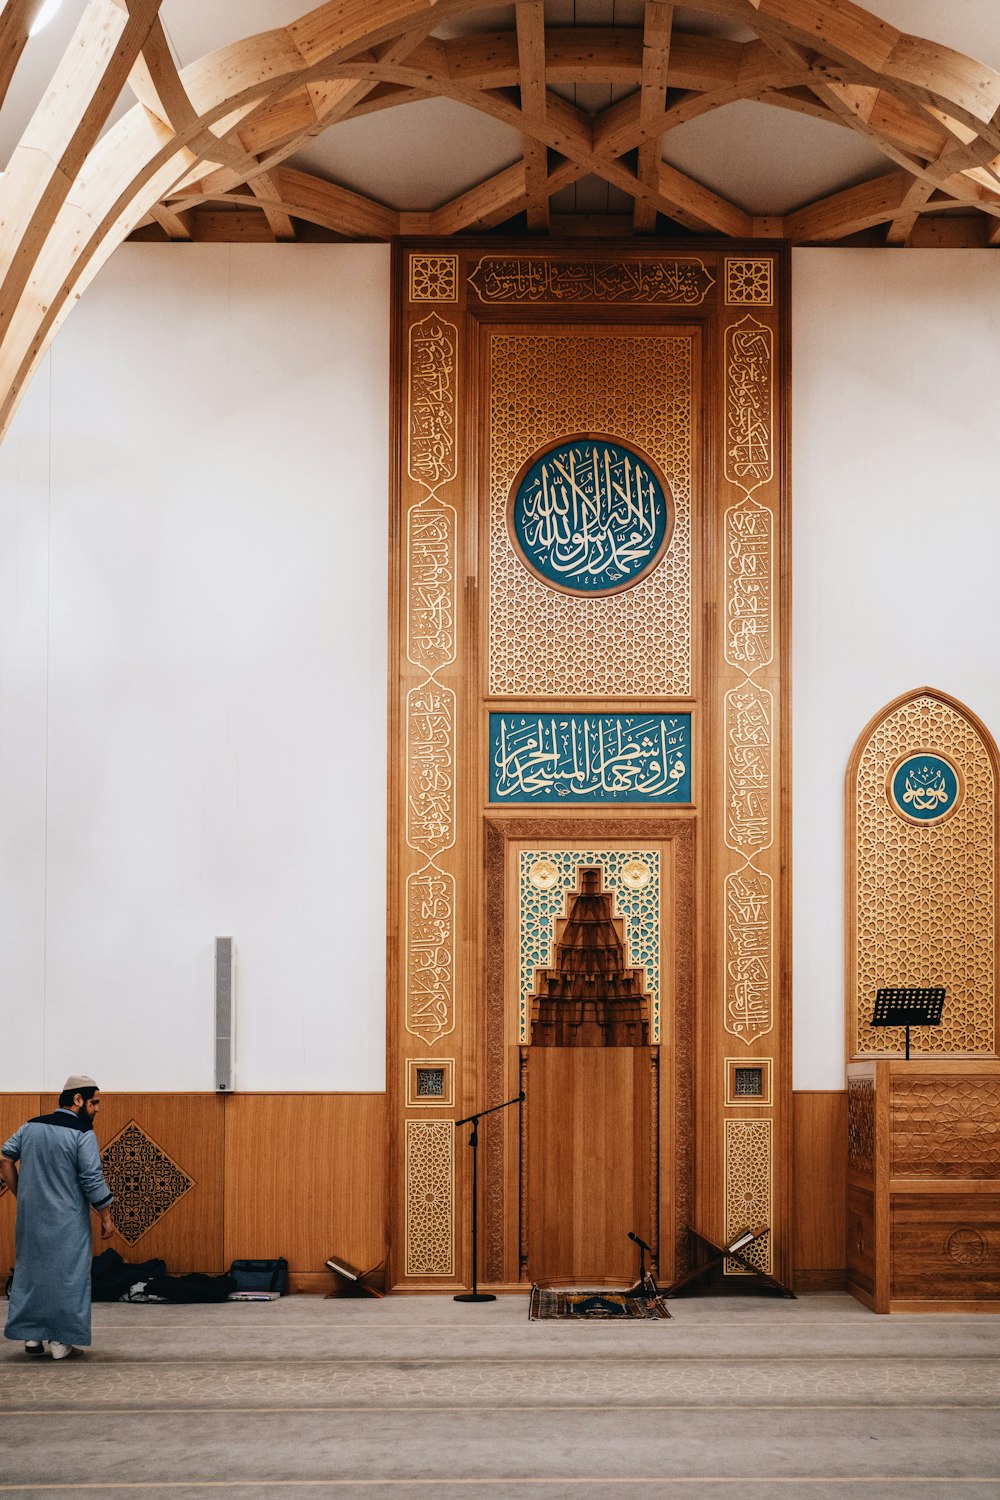 Interiore della moschea